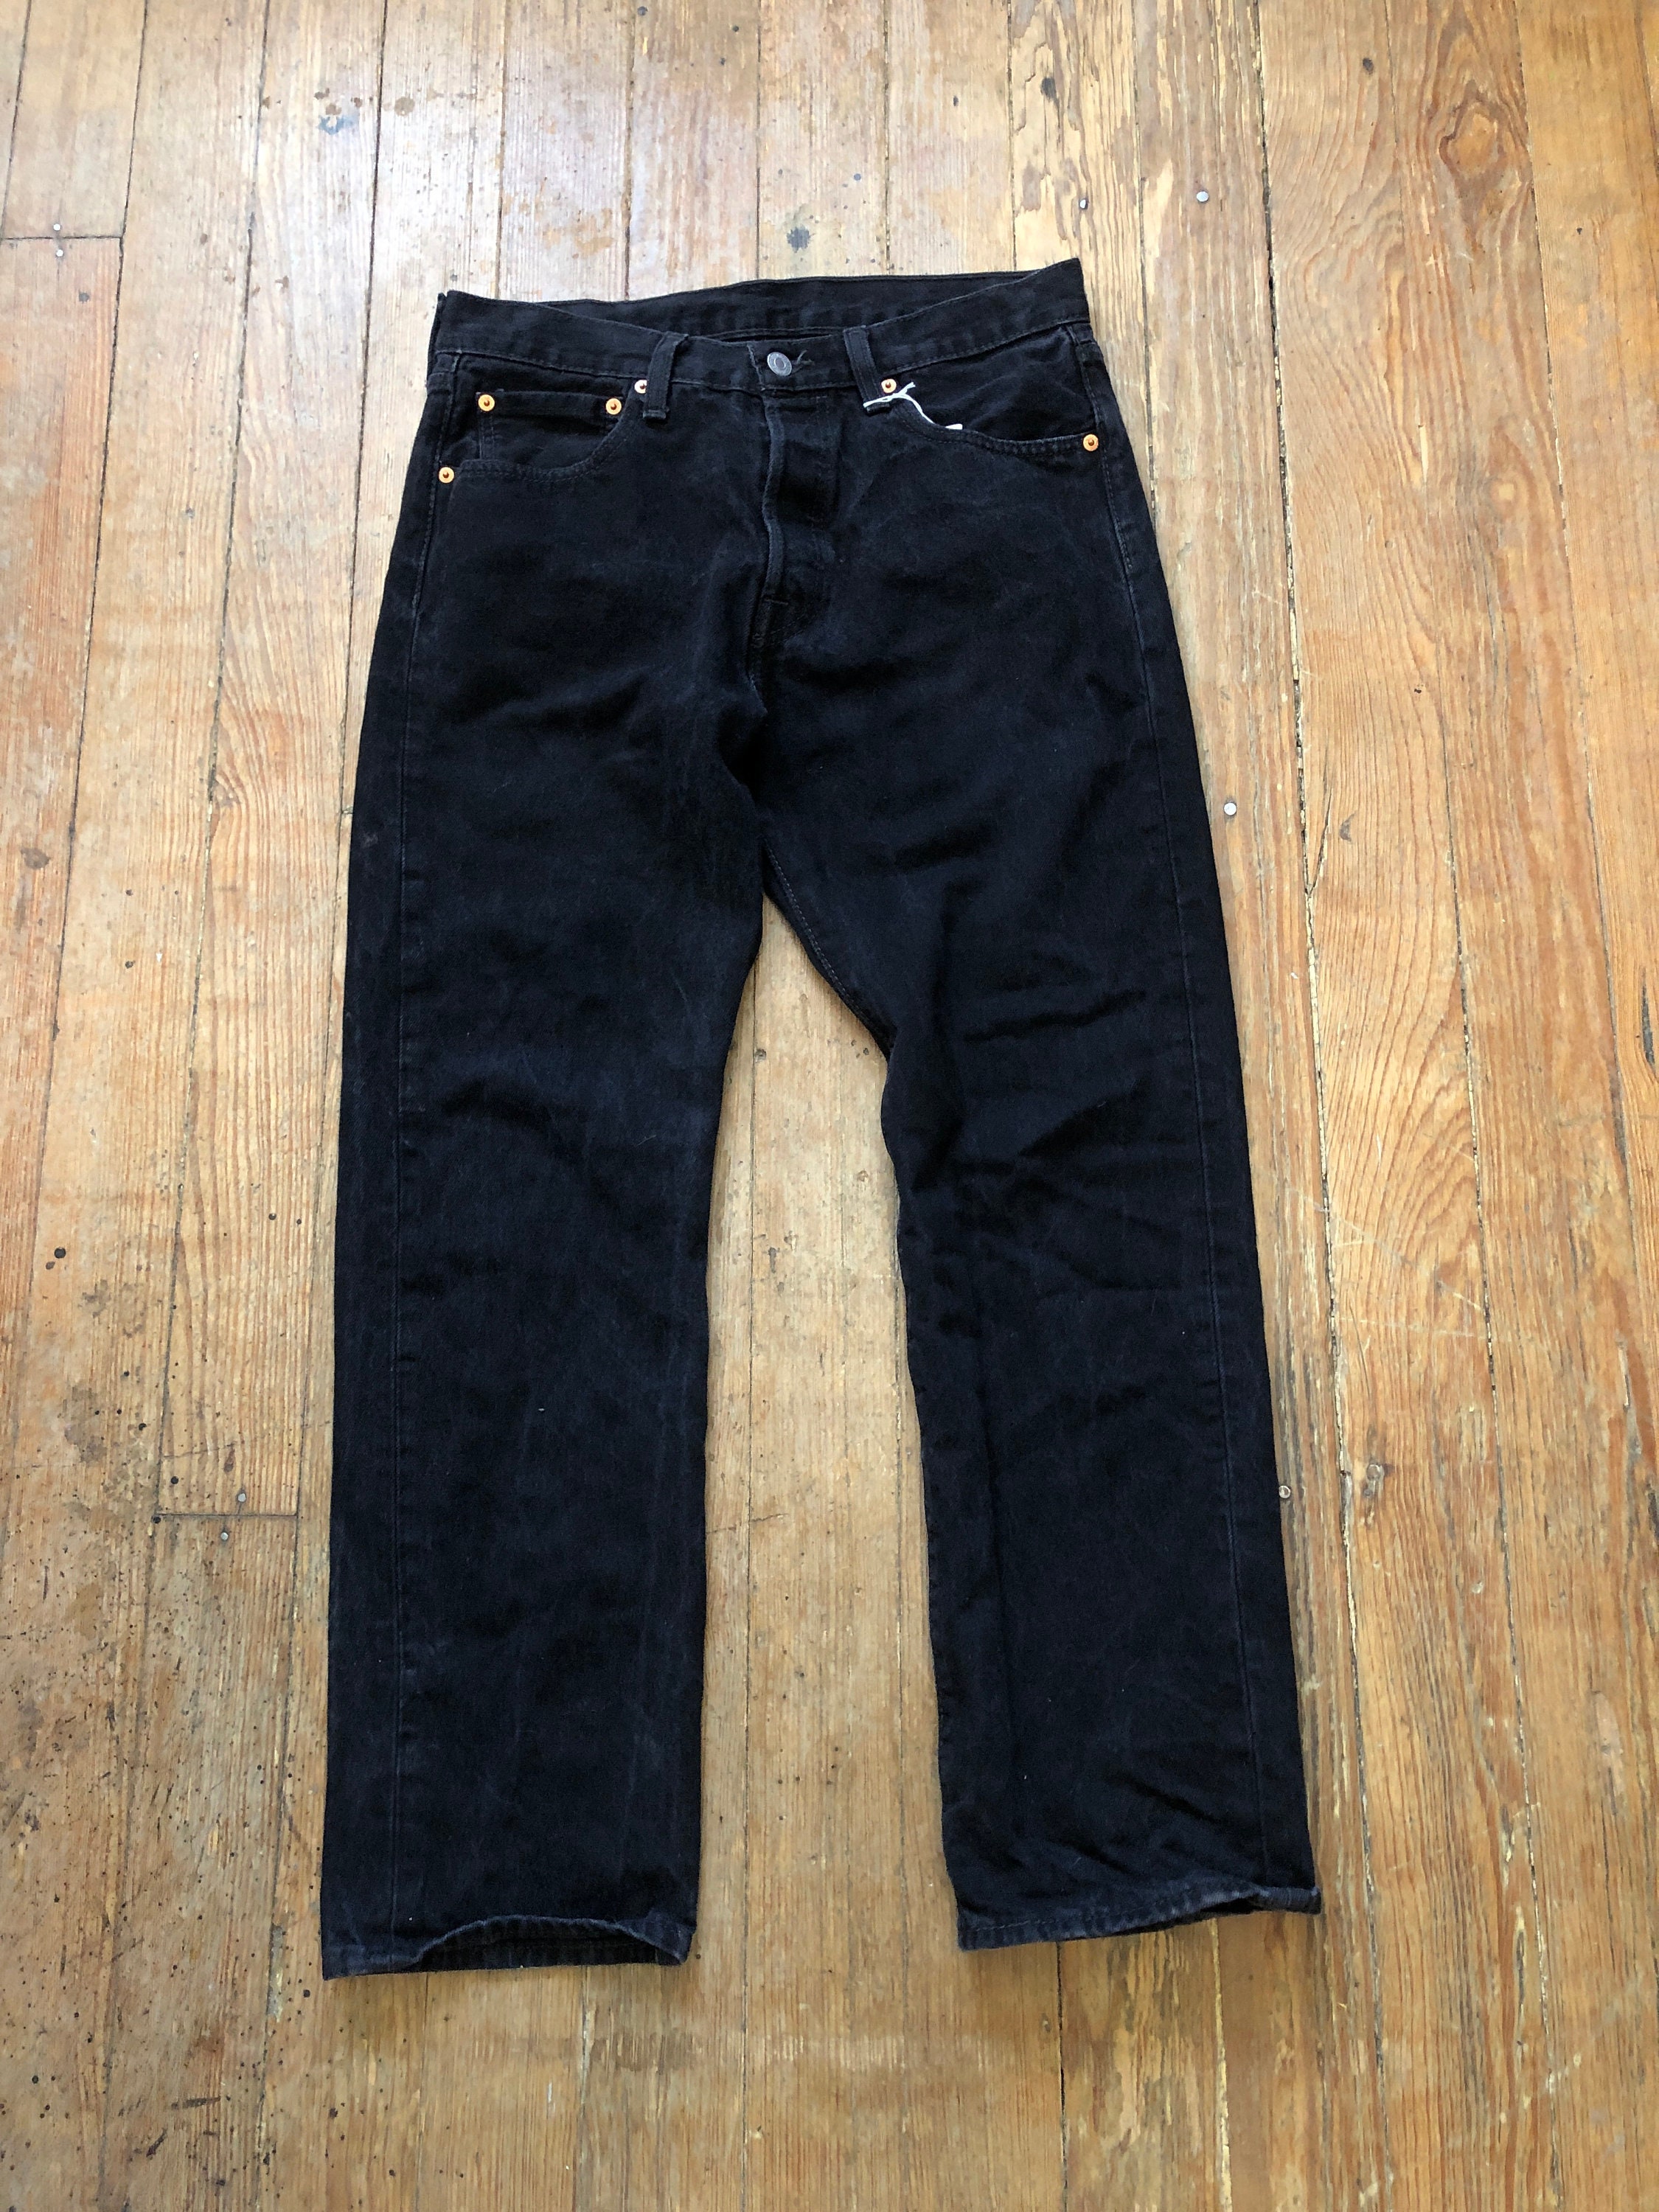 Vintage Pants: Levi's 501 Jeans Size W: 40 & Up - ReRags Vintage